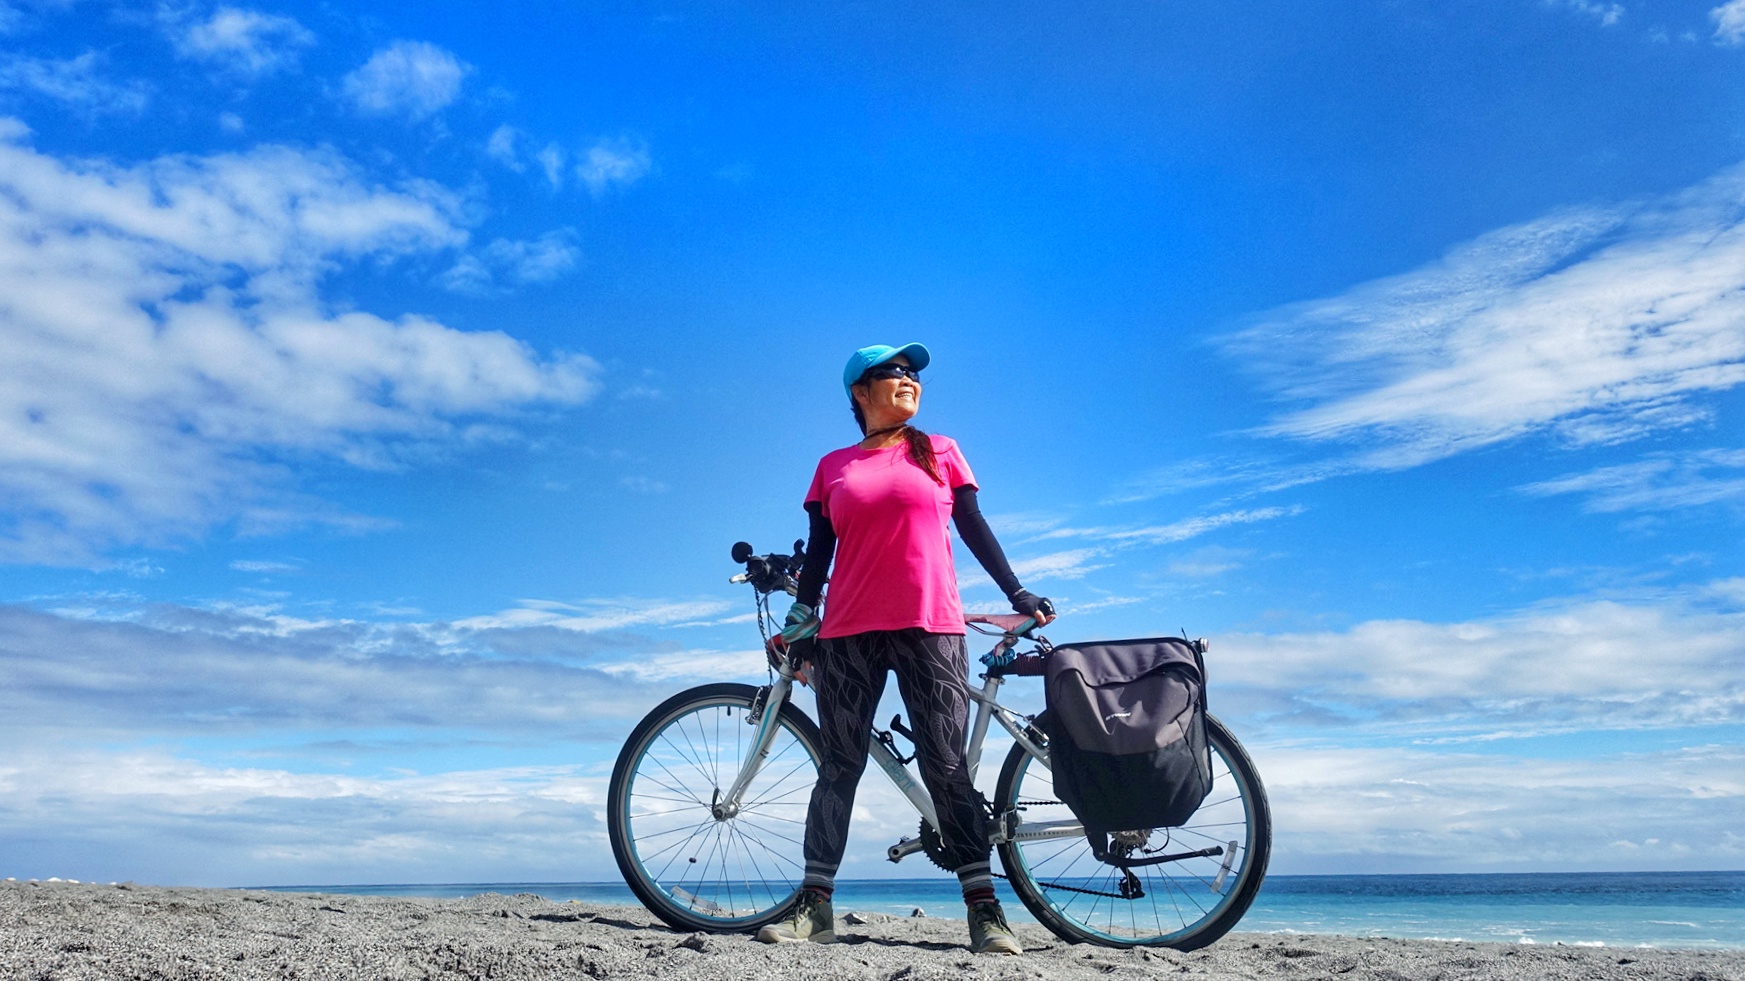 退 休 後 ， 粉 圓 妹 騎 車 環 島 ， 也 挑 戰 攀 登 百 岳 。 